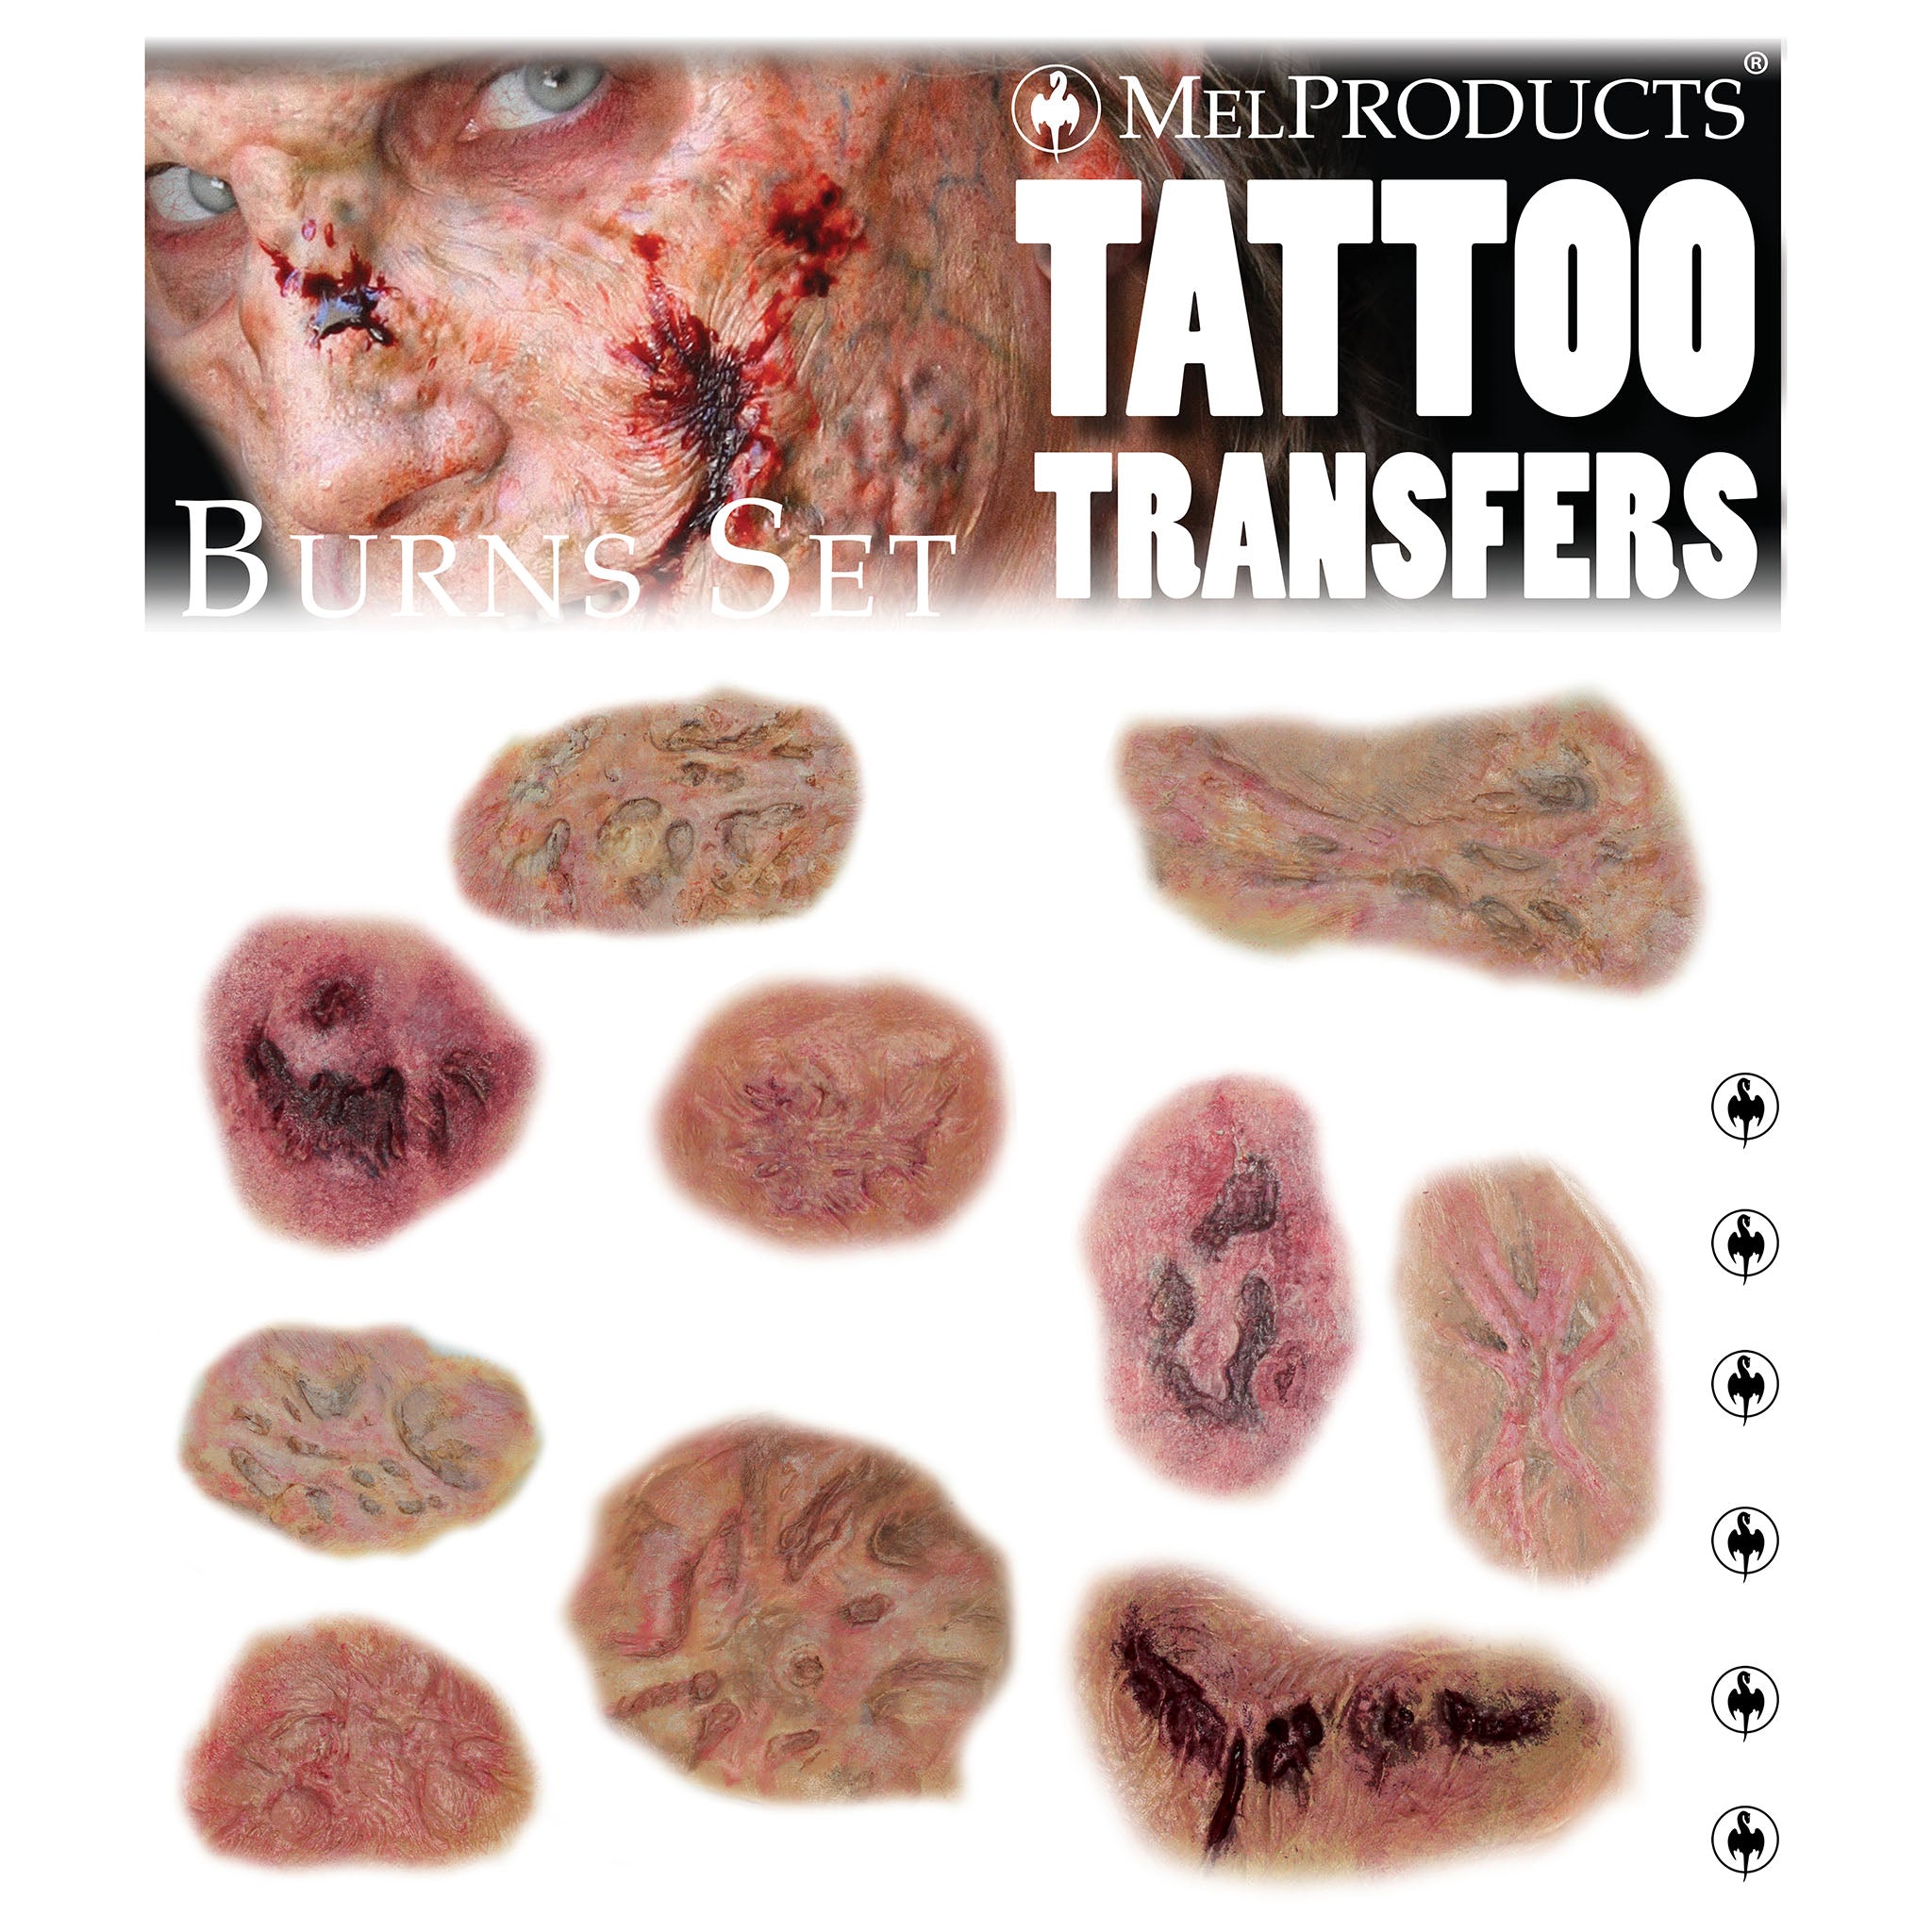 Tattoo Transfers